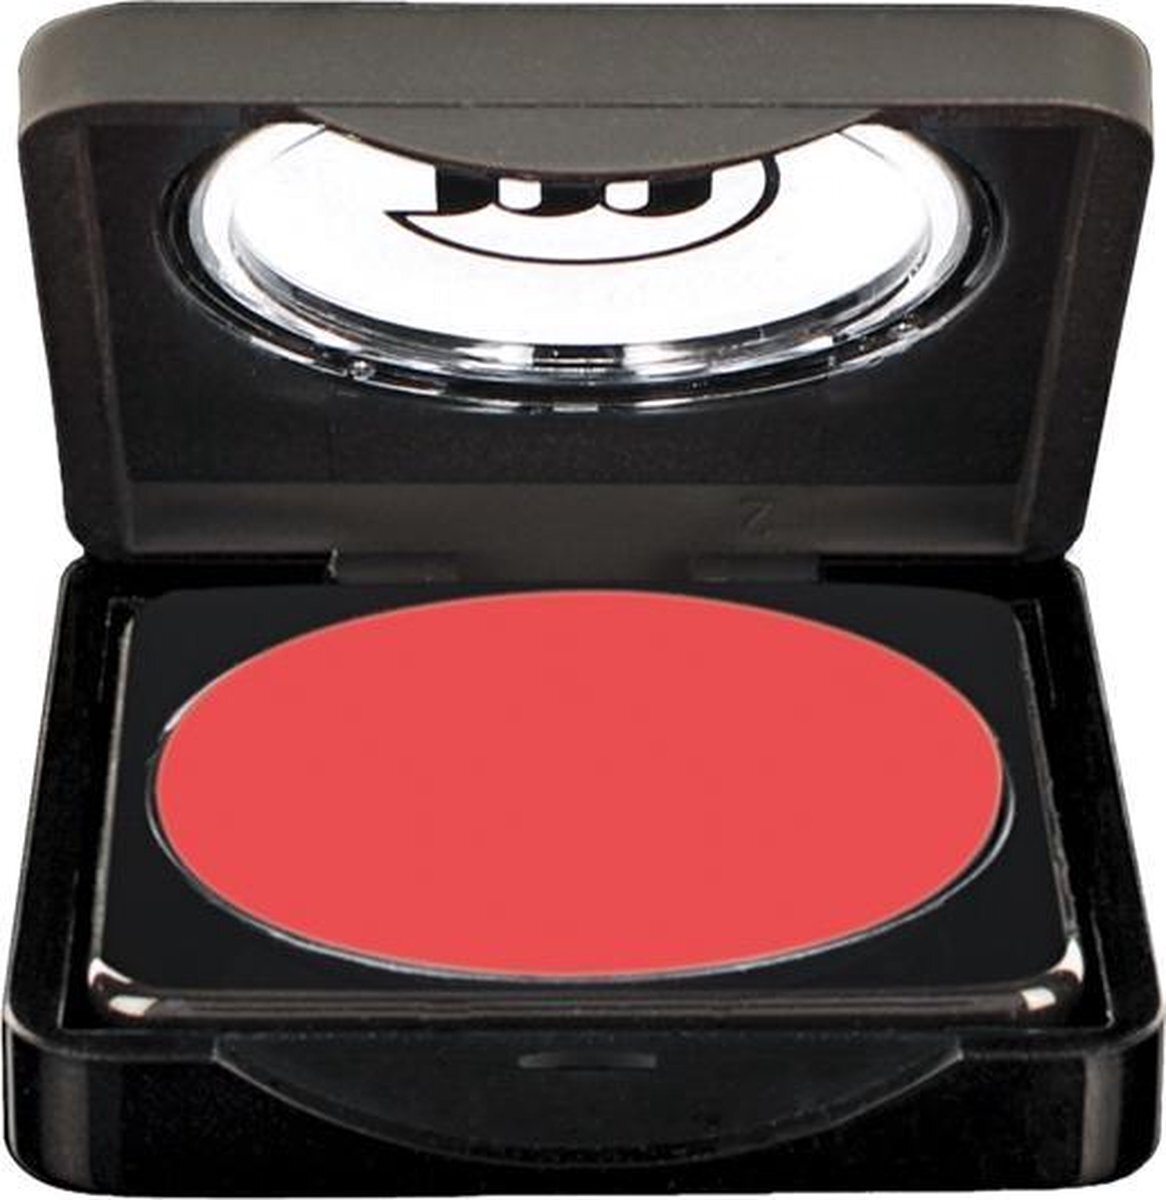 Make-up Studio Blusher in Box Type B - 43